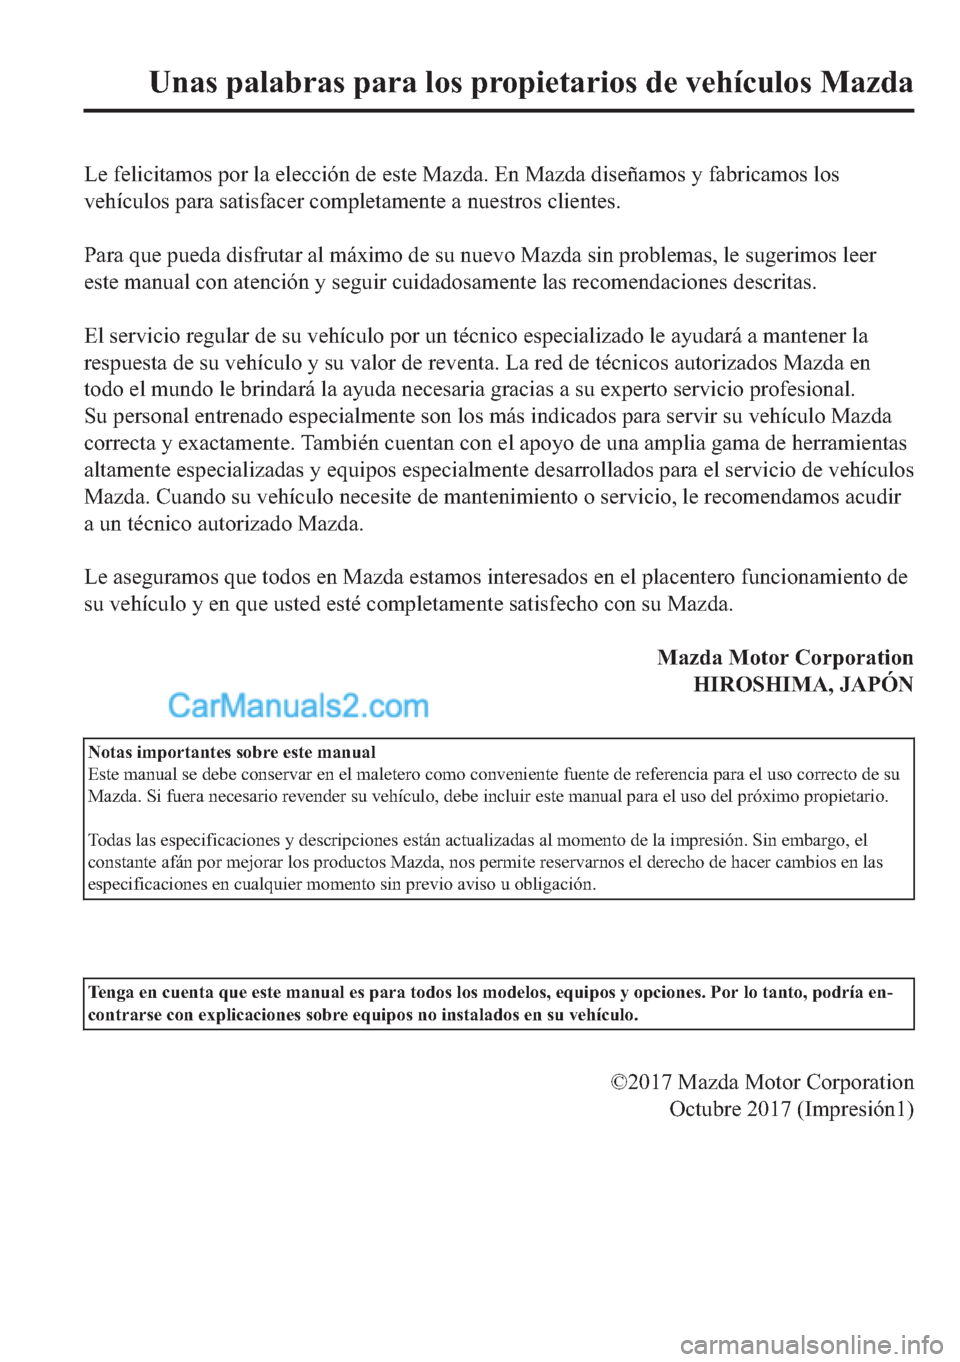 MAZDA MODEL MX-5 2017  Manual del propietario (in Spanish)  �/�H��I�H�O�L�F�L�W�D�P�R�V��S�R�U��O�D��H�O�H�F�F�L�y�Q��G�H��H�V�W�H��0�D�]�G�D���(�Q��0�D�]�G�D��G�L�V�H�x�D�P�R�V��\��I�D�E�U�L�F�D�P�R�V��O�R�V
�Y�H�K�t�F�X�O�R�V��S�D�U�D��V�D�W�